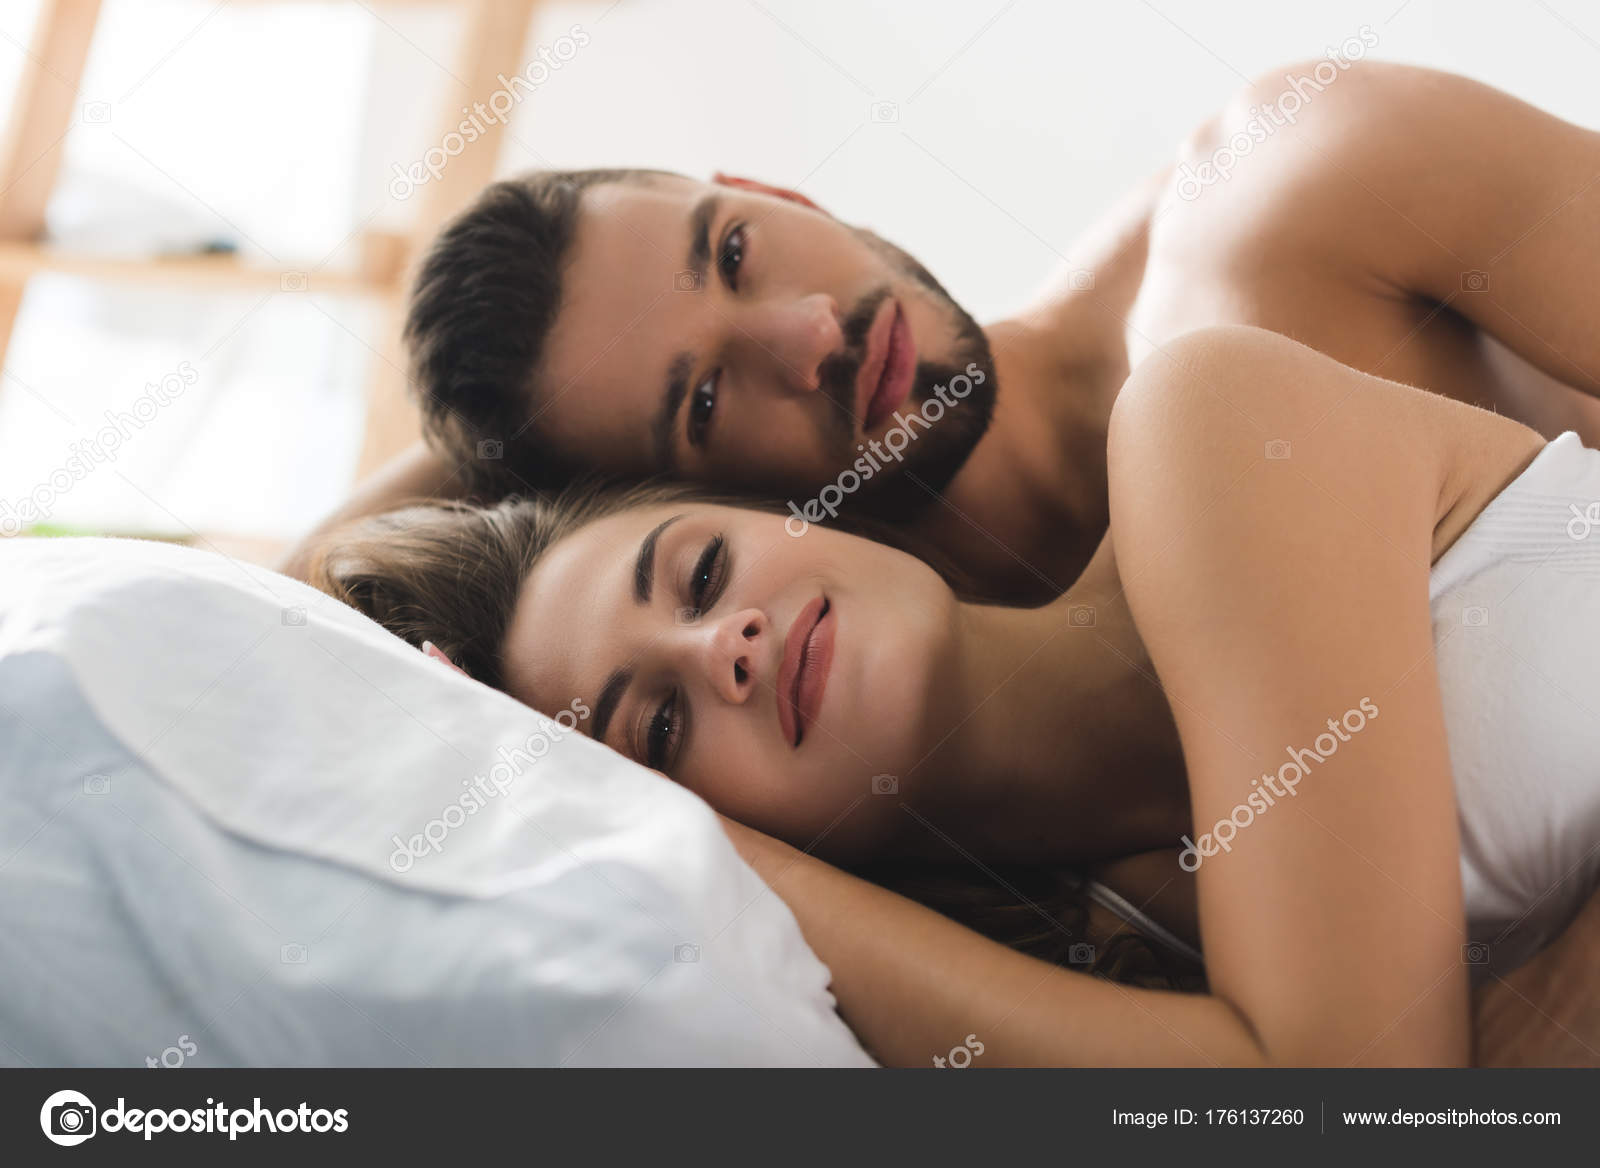 Секс чат пары